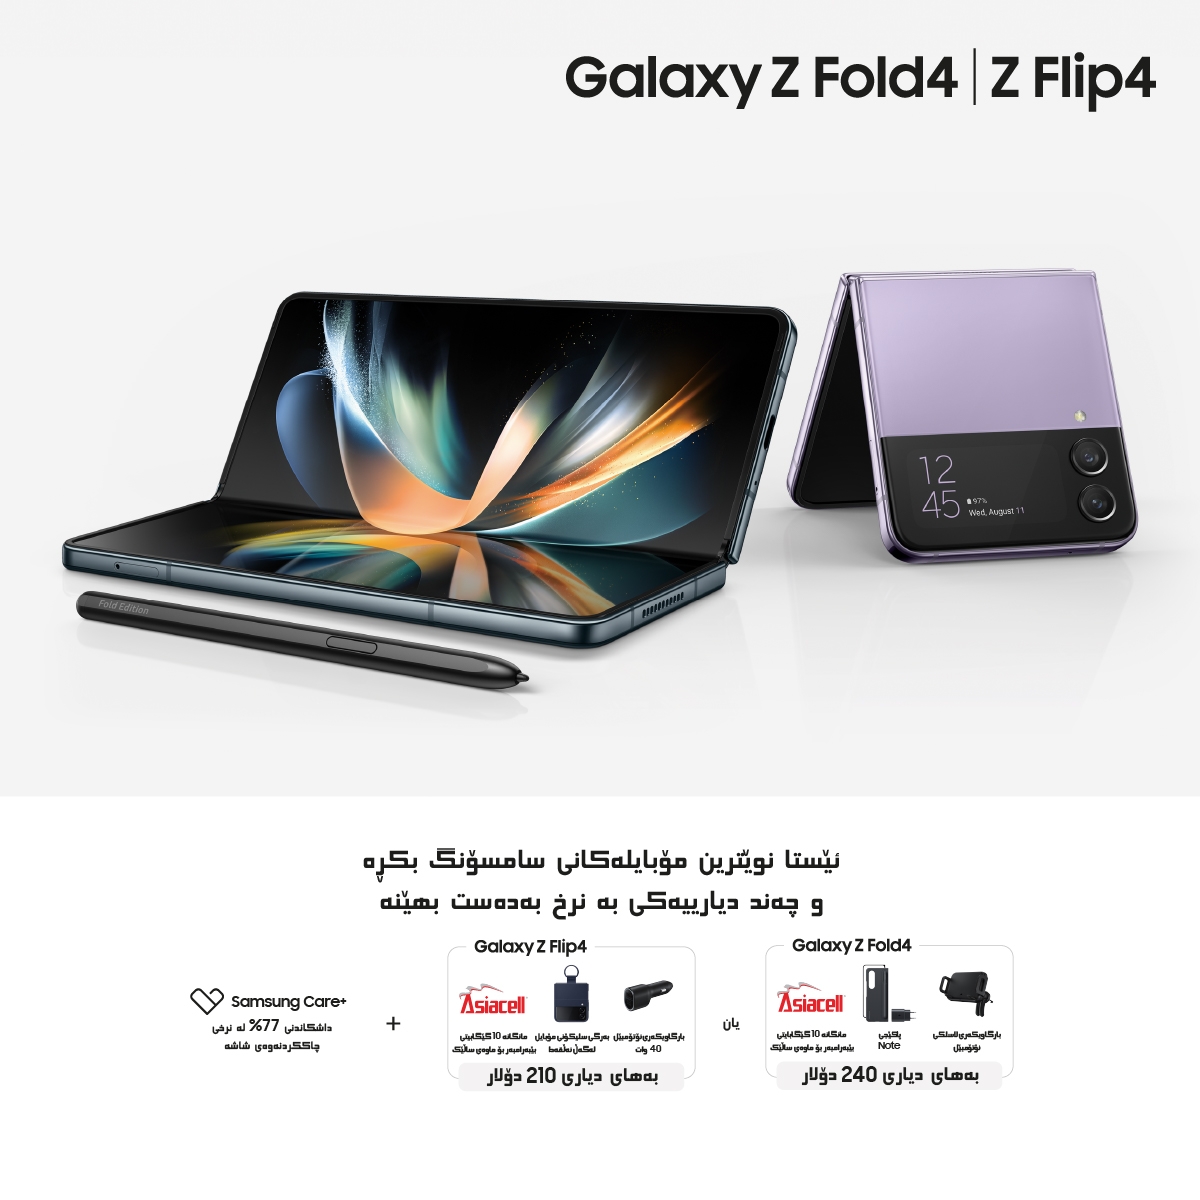 کۆمپانیای سامسۆنگ ئەلیکترۆنیکس  مۆبایلەکانی Galaxy Z Fold 4 و Galaxy Z Flip 4 خستە بازاڕەکانی عێراق